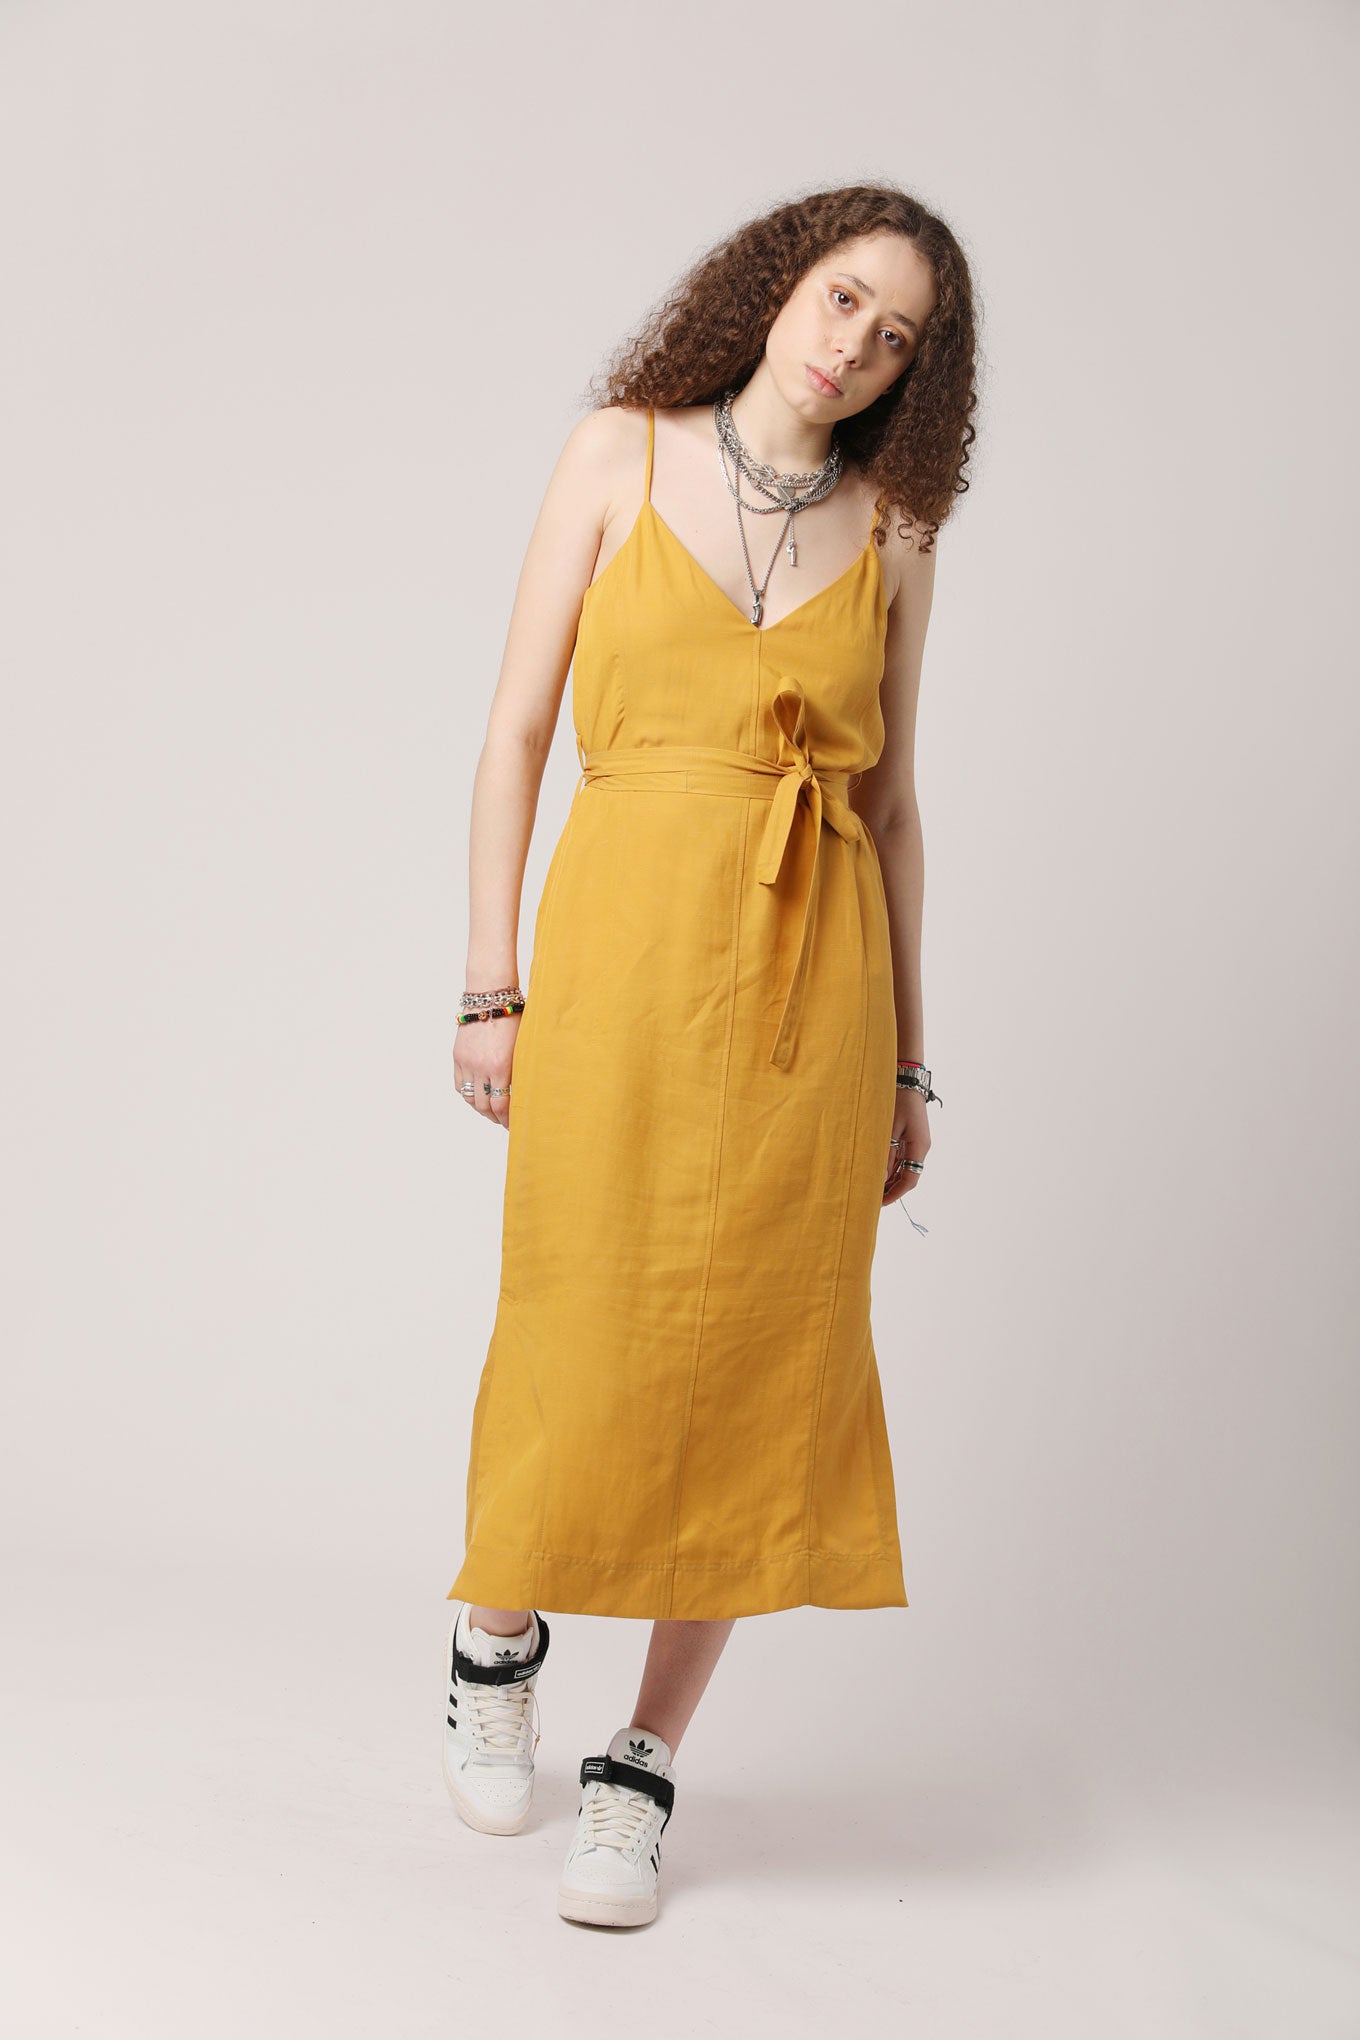 IMAN Tencel Linen Slip Dress Tangerine, SIZE 2 / UK 10 / EUR 38